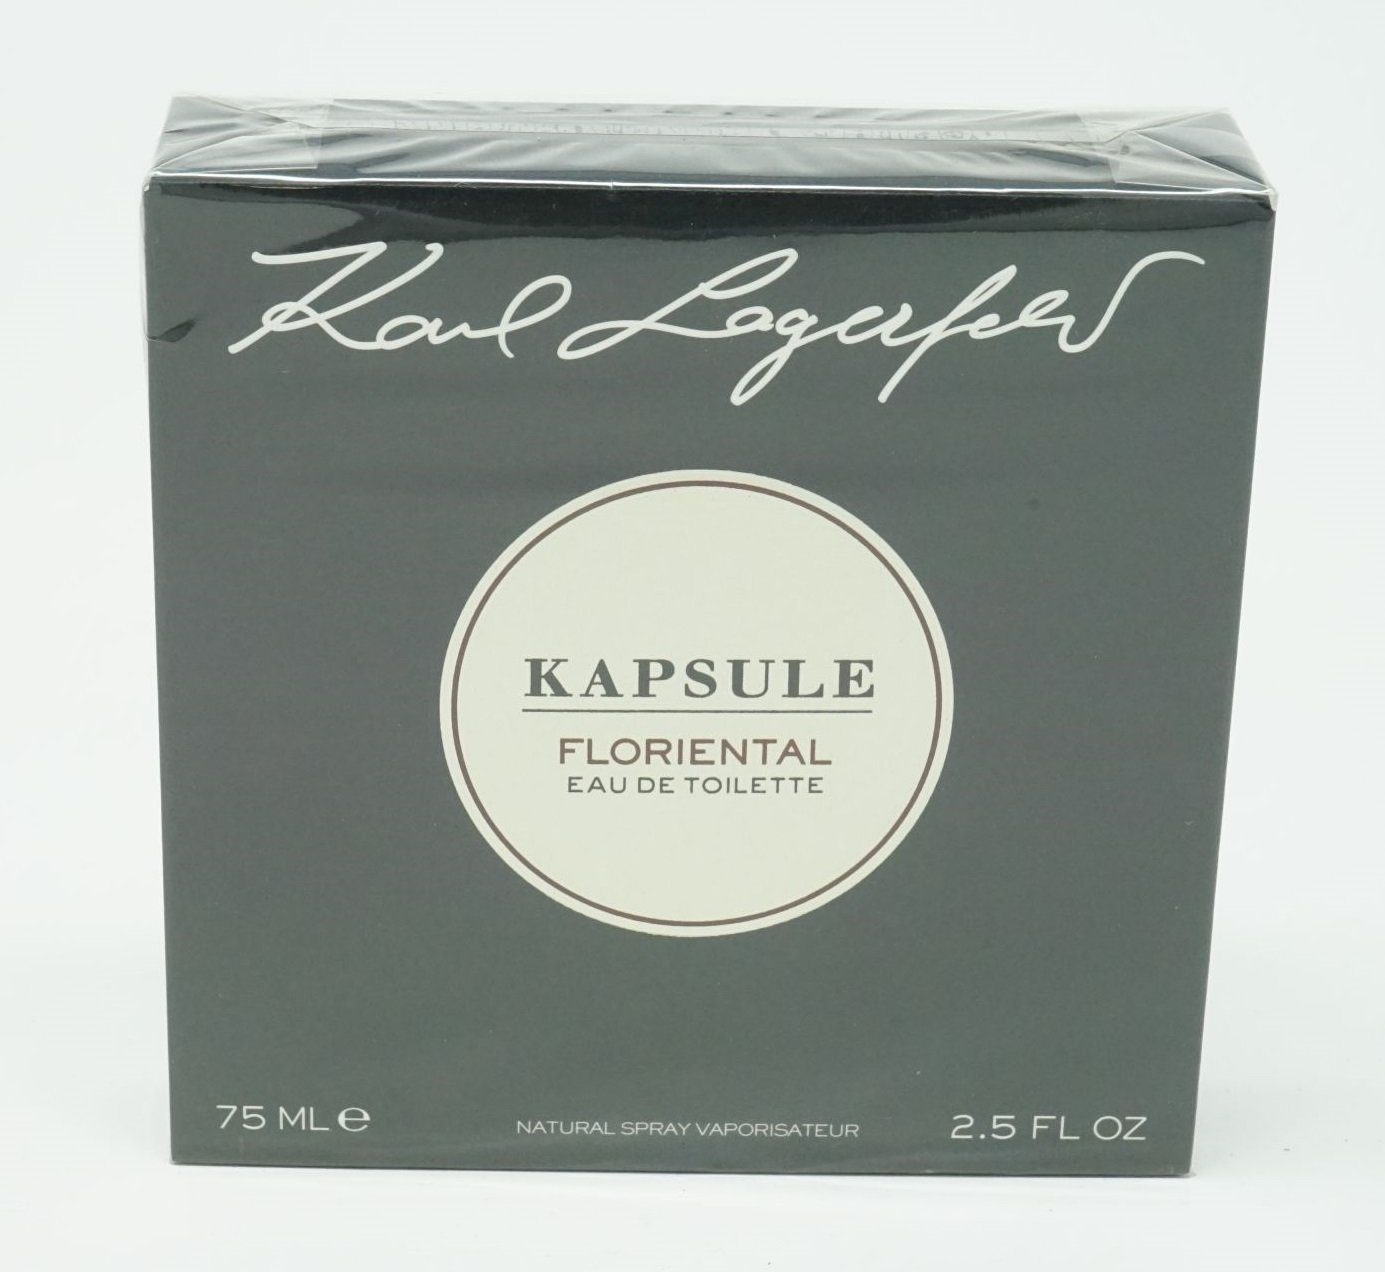 Spray Toilette de Toilette ml Kapsule 75 Floriental Lagerfeld de LAGERFELD Eau Eau Karl